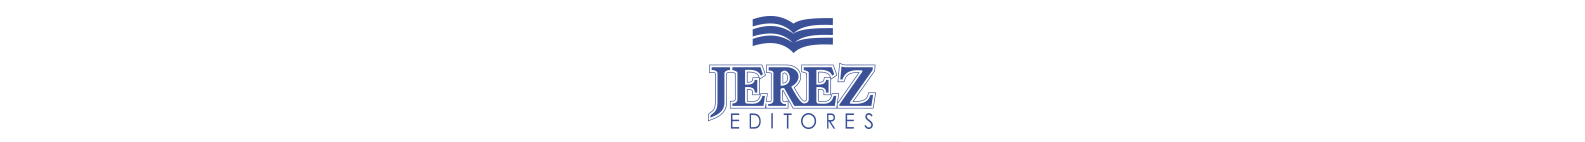 Logo Jerez Editores large